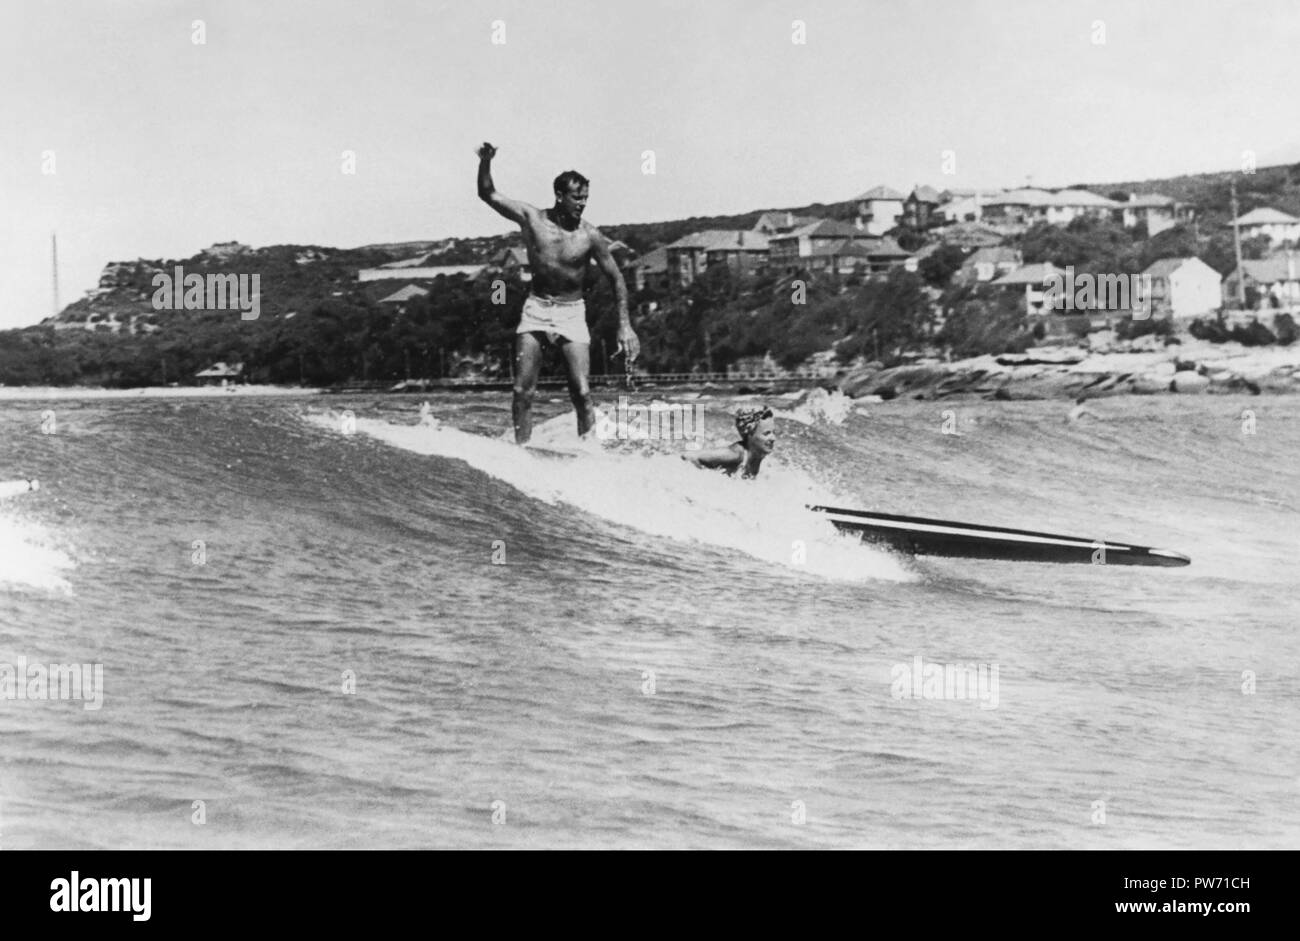 Mann und Frau auf einem longboard surfen Tandem 1945 an der Manly Beach, Sydney, Australien. (Foto von Ray Leighton) Stockfoto